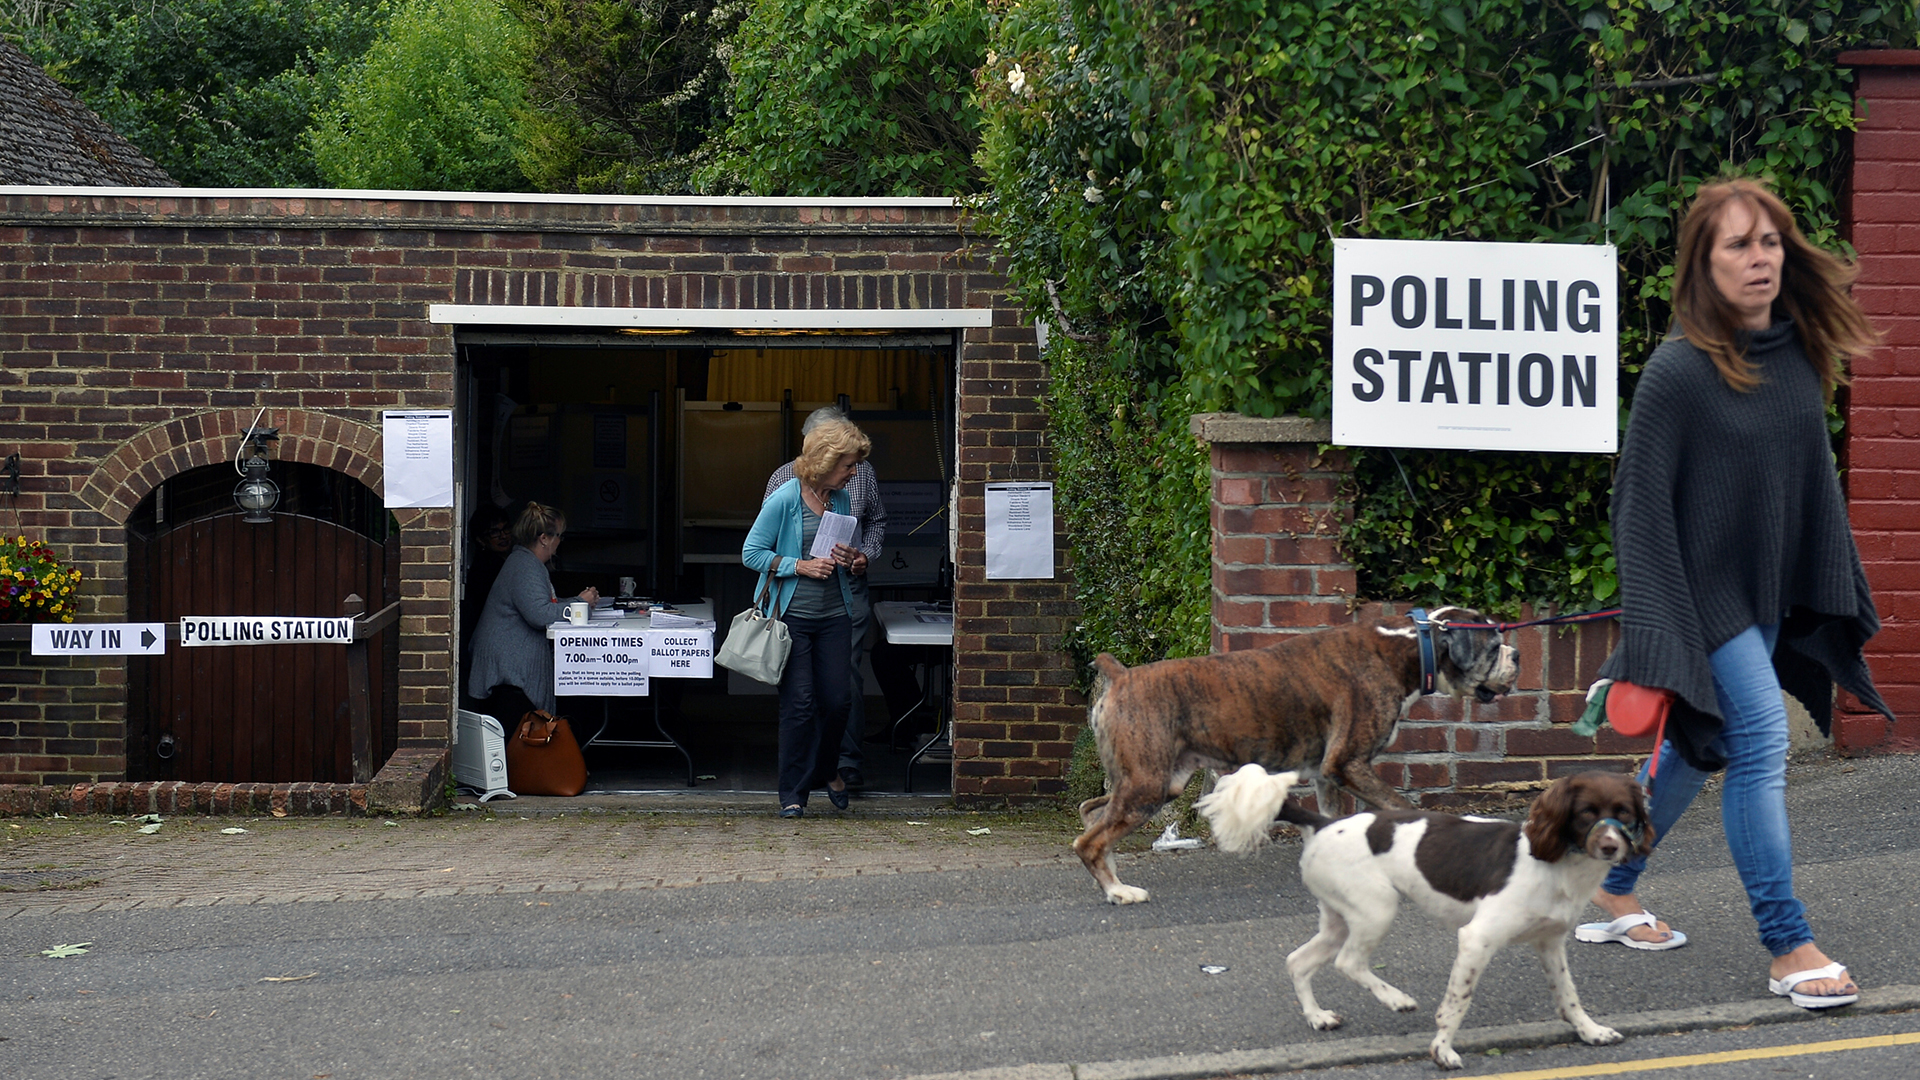 Un pub, un garaje o una lavandería, así son los centros electorales en Reino Unido 3